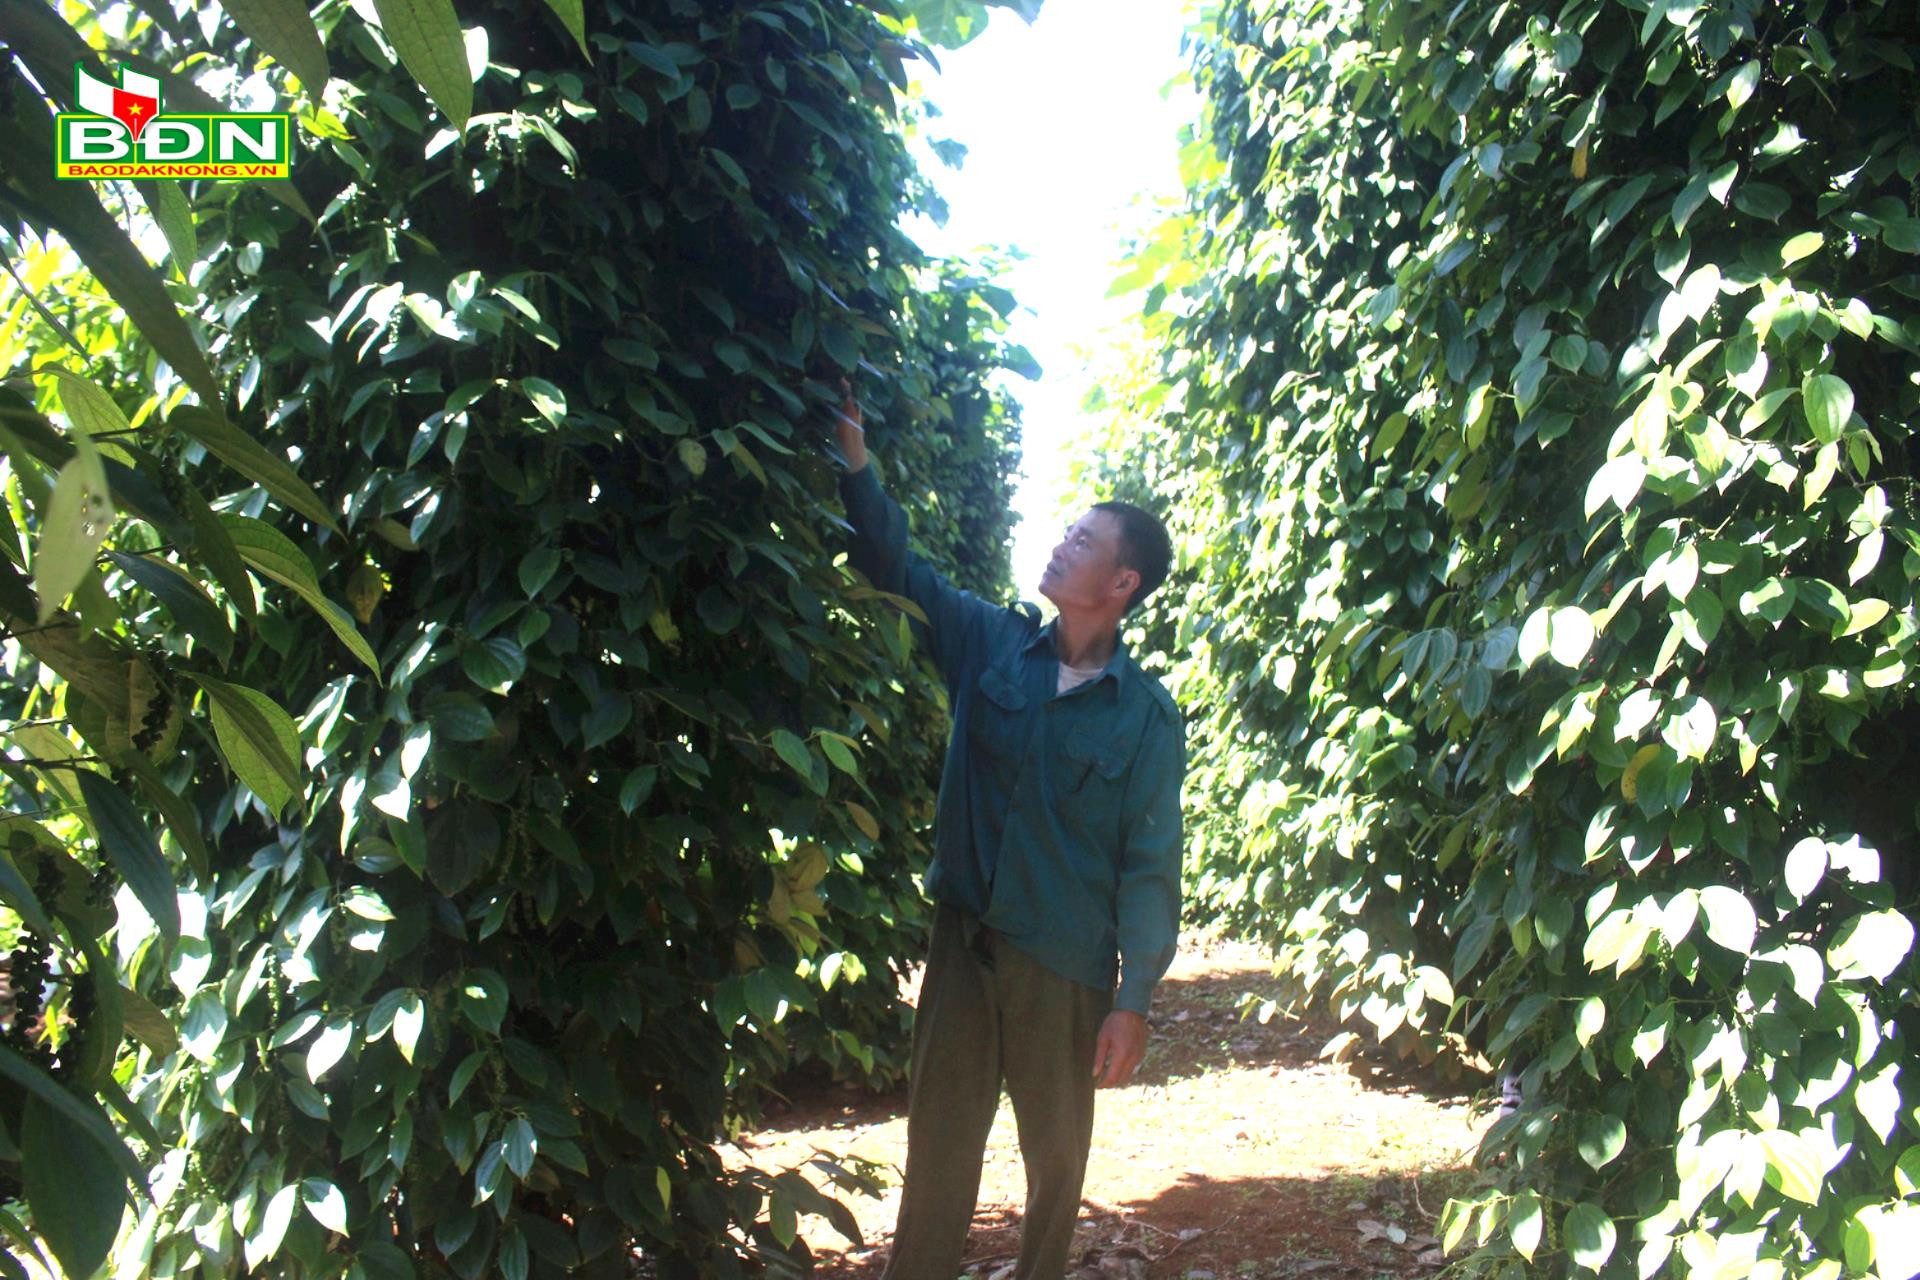 Nông dân, doanh nghiệp, HTX ở Đắk Nông hợp tác trồng hồ tiêu, cà phê kiểu gì mà nhà nào cũng có tiền nhiều hơn - Ảnh 1.